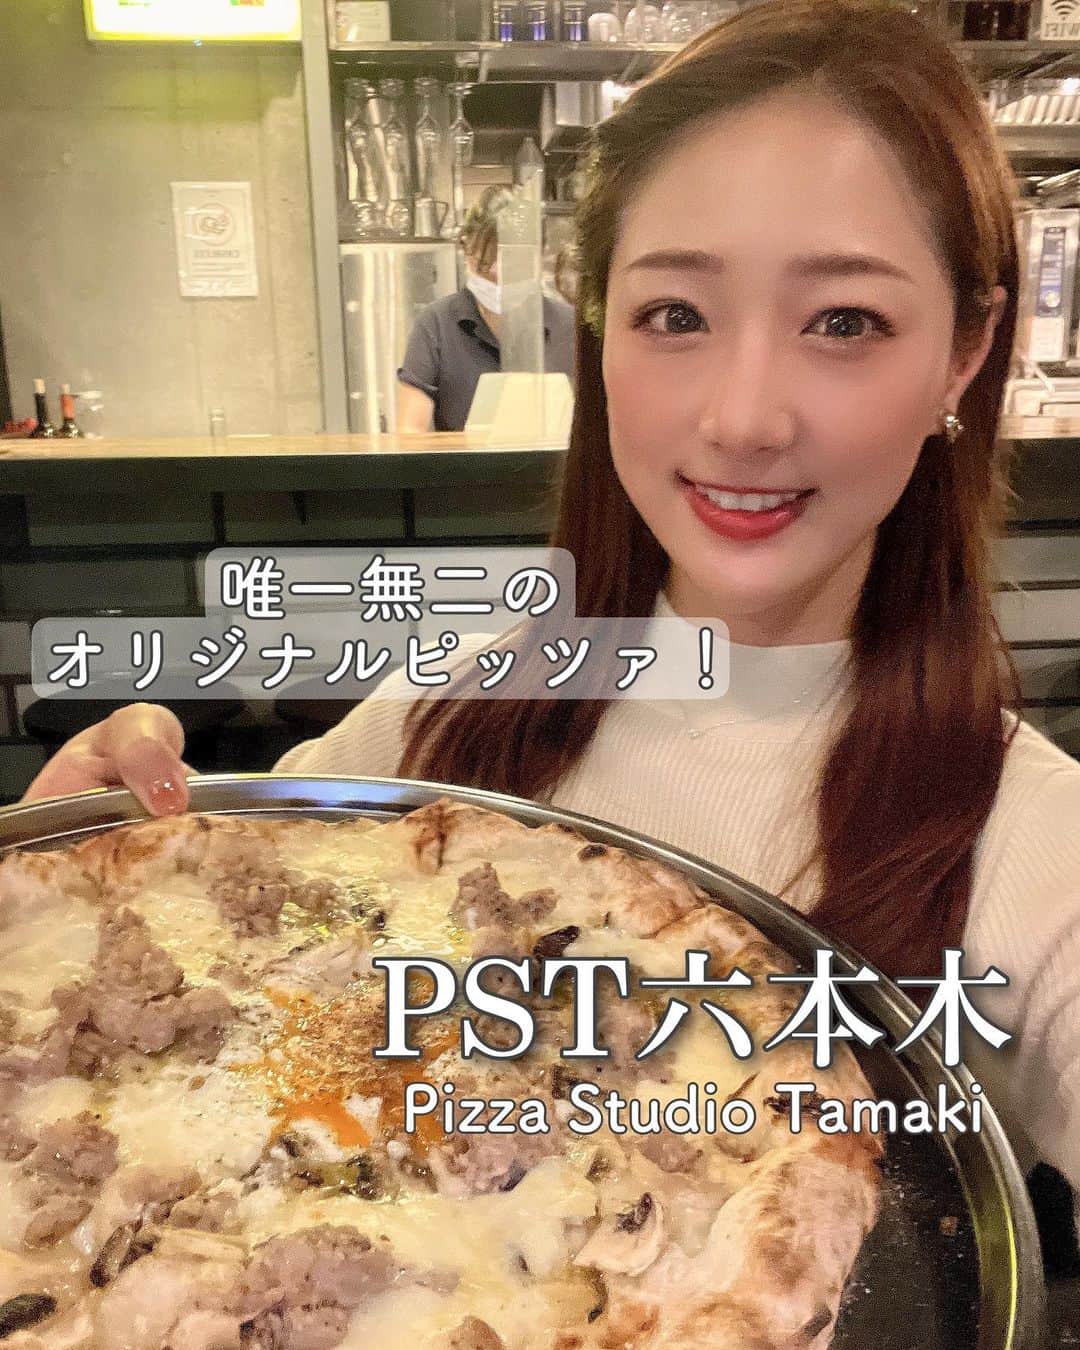 佐々木もよこのインスタグラム：「【PST 六本木】  🚃六本木駅から徒歩3分 　乃木坂駅から徒歩5分🫧  🌷友人、家族、気軽なデート  Pizza Studio Tamakiは、2019年〜2022年まで4年連続で「ミシュラン東京 ビブグルマン」に選ばれている大人気のお店。  ミッドタウンからすぐのところにあります。  広い店内の真ん中にピザ窯があり、オープンキッチンで店員さんが作業をしているところをみることができます。  もちろん、お店のオーナー、玉城さんがピッツァを作って焼くところもばっちり見えます🥹🫶💕 玉城さんめっちゃかっこいいです。  せっかくなので、お声がけさせていただいたところ、とっても快くお話してくださりすごく嬉しかった✨ さりげなくツーショットも撮ってもらったw  肝心のピッツァですが、こちらはとってもふわふわもちもちで歯切れがよく本当〜〜においしい。沖縄の塩を最初に窯に巻いてからピッツァを焼き始めるんだけどその塩加減が絶妙で、生地だけでも十分においしめます。  小麦へのこだわりや、ピッツァのコルニチョーネ(縁)はただ縁を作るだけではなく、うねうねとうねらせた独特の形成。ナポリピッツァのようでナポリピッツァではない完全オリジナル、玉城さんにしか作れない味わいのピッツァです！！  ✔︎タマキ(チェリートマト、フレッシュスモークモッツァレラ、ペコリーノバジルR2960円)  タマキさんの名前のついたピッツァは絶対。 甘酸っぱいトマトとなめらかで香りのいいスモークチーズと塩味のある生地の相性は抜群でしかない。  ✔︎ビスマルク(フレッシュモッツァレラ、マッシュルーム、自家製ポークソーセージ、ペコリーノロマーノ、紅孔雀卵R3460円)  調べたら、紅孔雀卵って、ニワトリの卵なんだけど、エサにパプリカを入れてるらしく黄身の色が濃いんだって。ぷりんっとしてて弾力のある卵らしい🤔 ビスマルク、すぐに卵崩しちゃうから色はそんなに気にしてなかったんだけど、次行ったらもっと味わうぞ！😤💕  ✔︎スペシャルビアンカ (フレッシュブッラータ、水牛のフレッシュモッツァレラ、マスカルポーネ、白トリュフオイル添えR4980円)  内容でもうわかりますよね？🥹 言わずもがなです😭泣いちゃうおいしさ…  こだわりがたくさんつまったピッツァの数々。 そして他のお料理もおいしかった！  早くまた久しぶりに行きたい！！！❤️  支払いはカードのみなのでご注意ください。  𑁍𓏸𓈒𓂃𓂃𓂃𓂃🕊𑁍𓏸𓈒𓂃𓂃𓂃𓂃🕊  🍕ピッツァスタジオタマキ六本木🍕  営業時間 [水～金] 17:00～22:00(L.O.23:00) [土・日] 12:00～14:30(L.O.15:00) 17:00～21:00(L.O.22:00) 日曜営業  月、火曜定休  予約可  📍東京都港区六本木7-6-2  📞 03-6434-7932  𑁍𓏸𓈒𓂃𓂃𓂃𓂃🕊𑁍𓏸𓈒𓂃𓂃𓂃𓂃🕊  #ピザ姫#ピザ#ピッツァ#ピザマニア#ピザ好き#イタリアンピッツァ#ピッツァマニア#ピザランチ#ピザ屋#ピザ部#pizza#pizzamania#pizzalover#pizzanapoletana#instapizza #pst六本木#pizzastudiotamaki #六本木グルメ#pstroppongi」